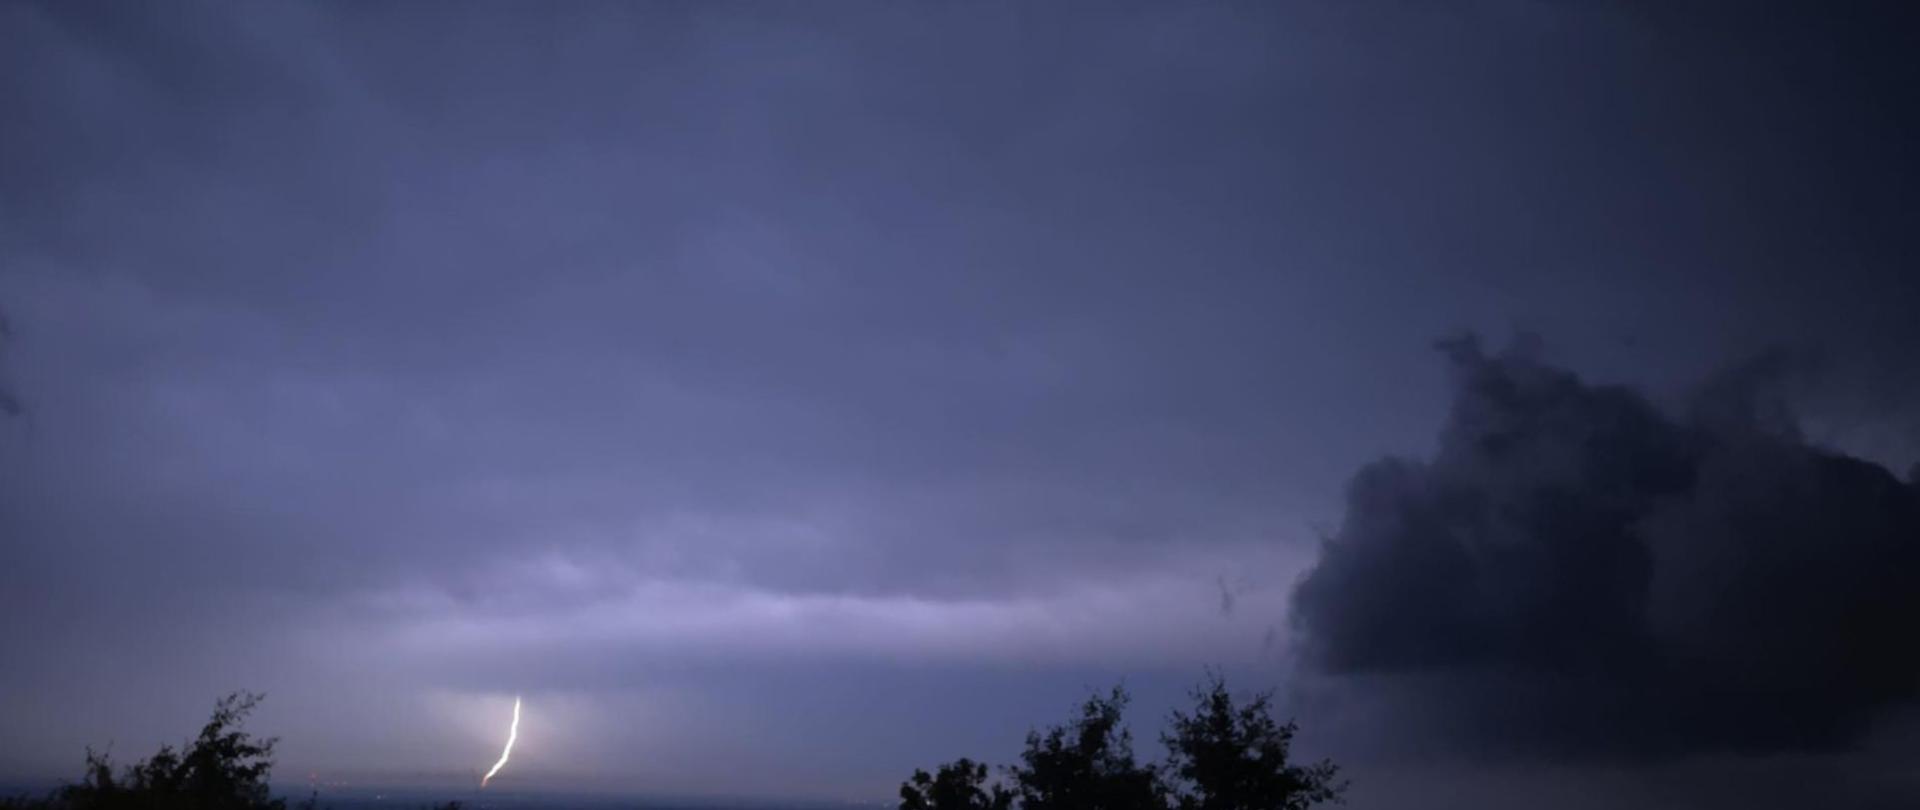 Zdjęcie przedstawia doziemienie piorunu na tle rozświetlonych chmur - zdjęcie wykonane w porze nocnej.